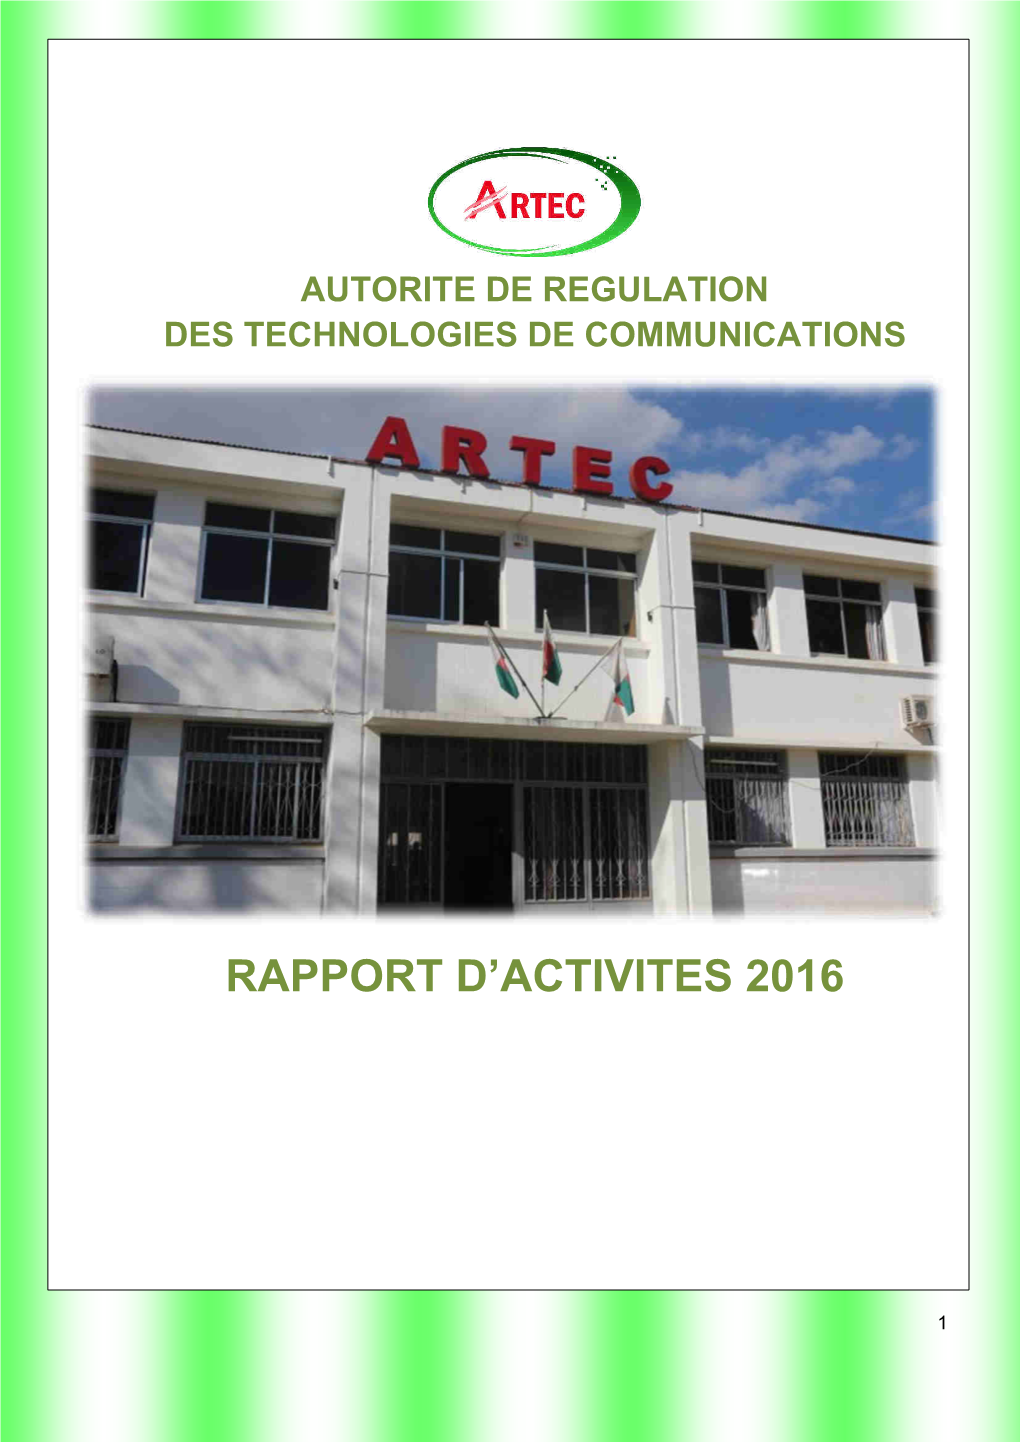 Rapport D'activites 2016